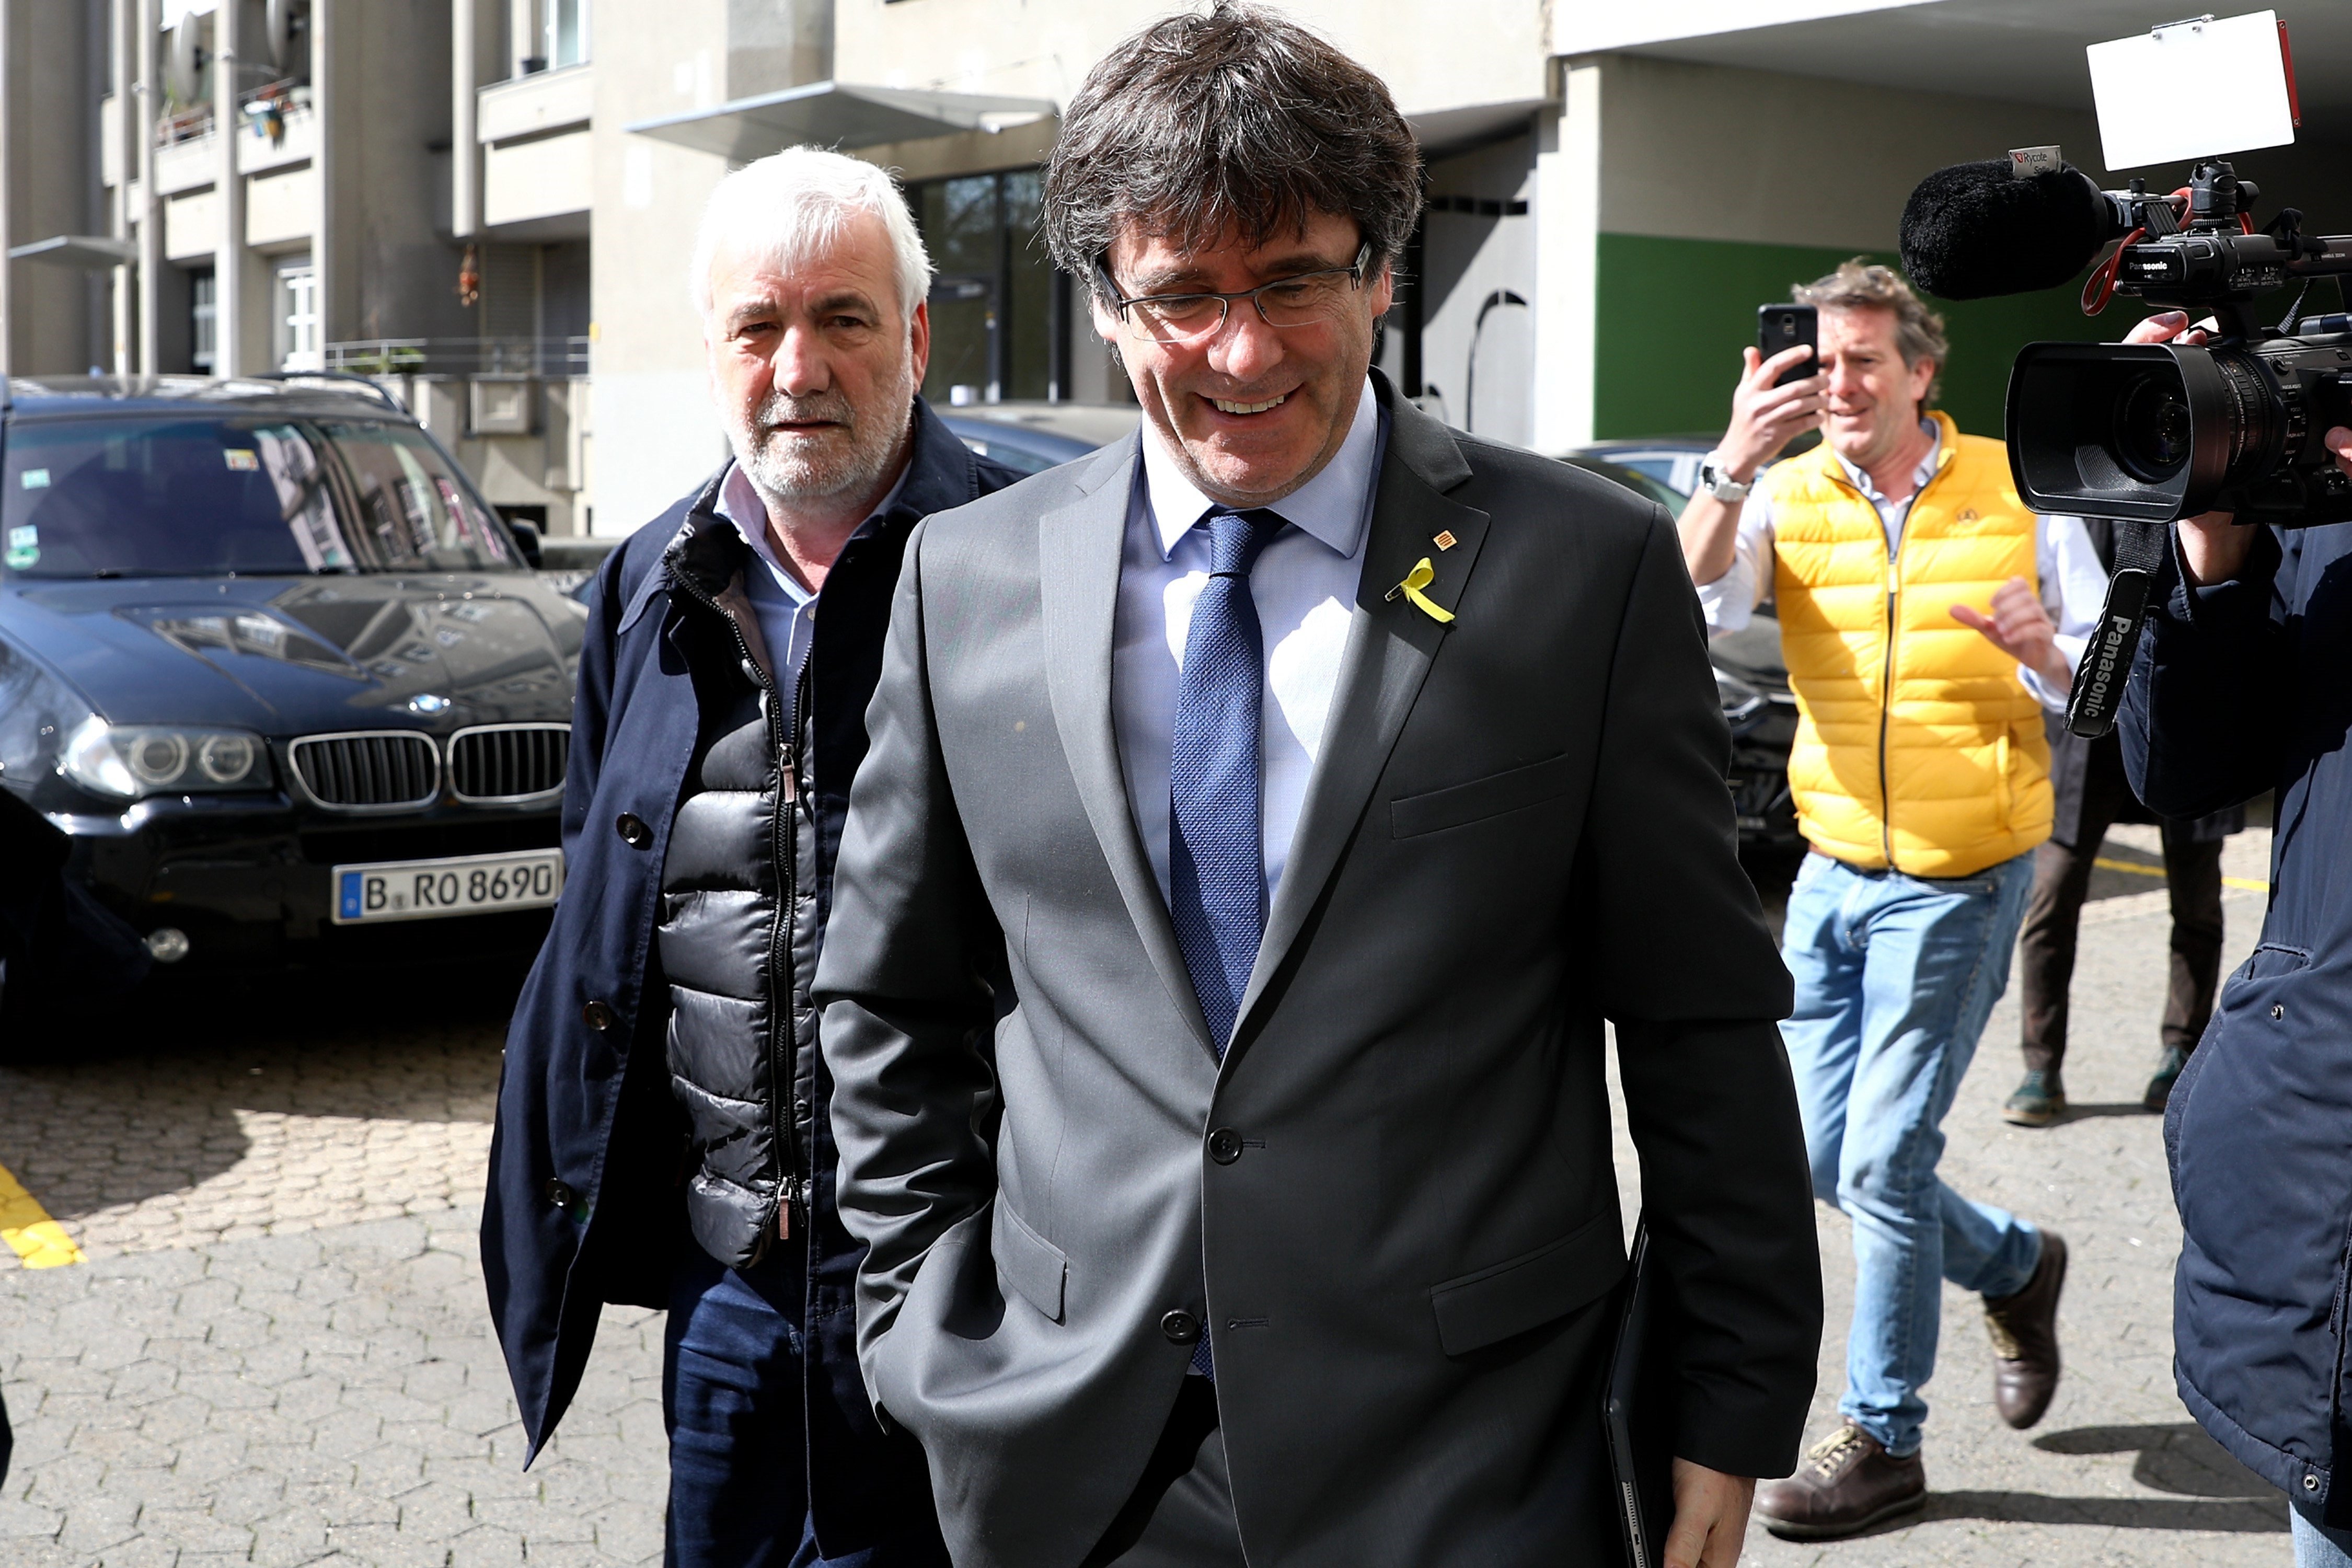 El fiscal quiere reabrir la causa contra los acompañantes de Puigdemont